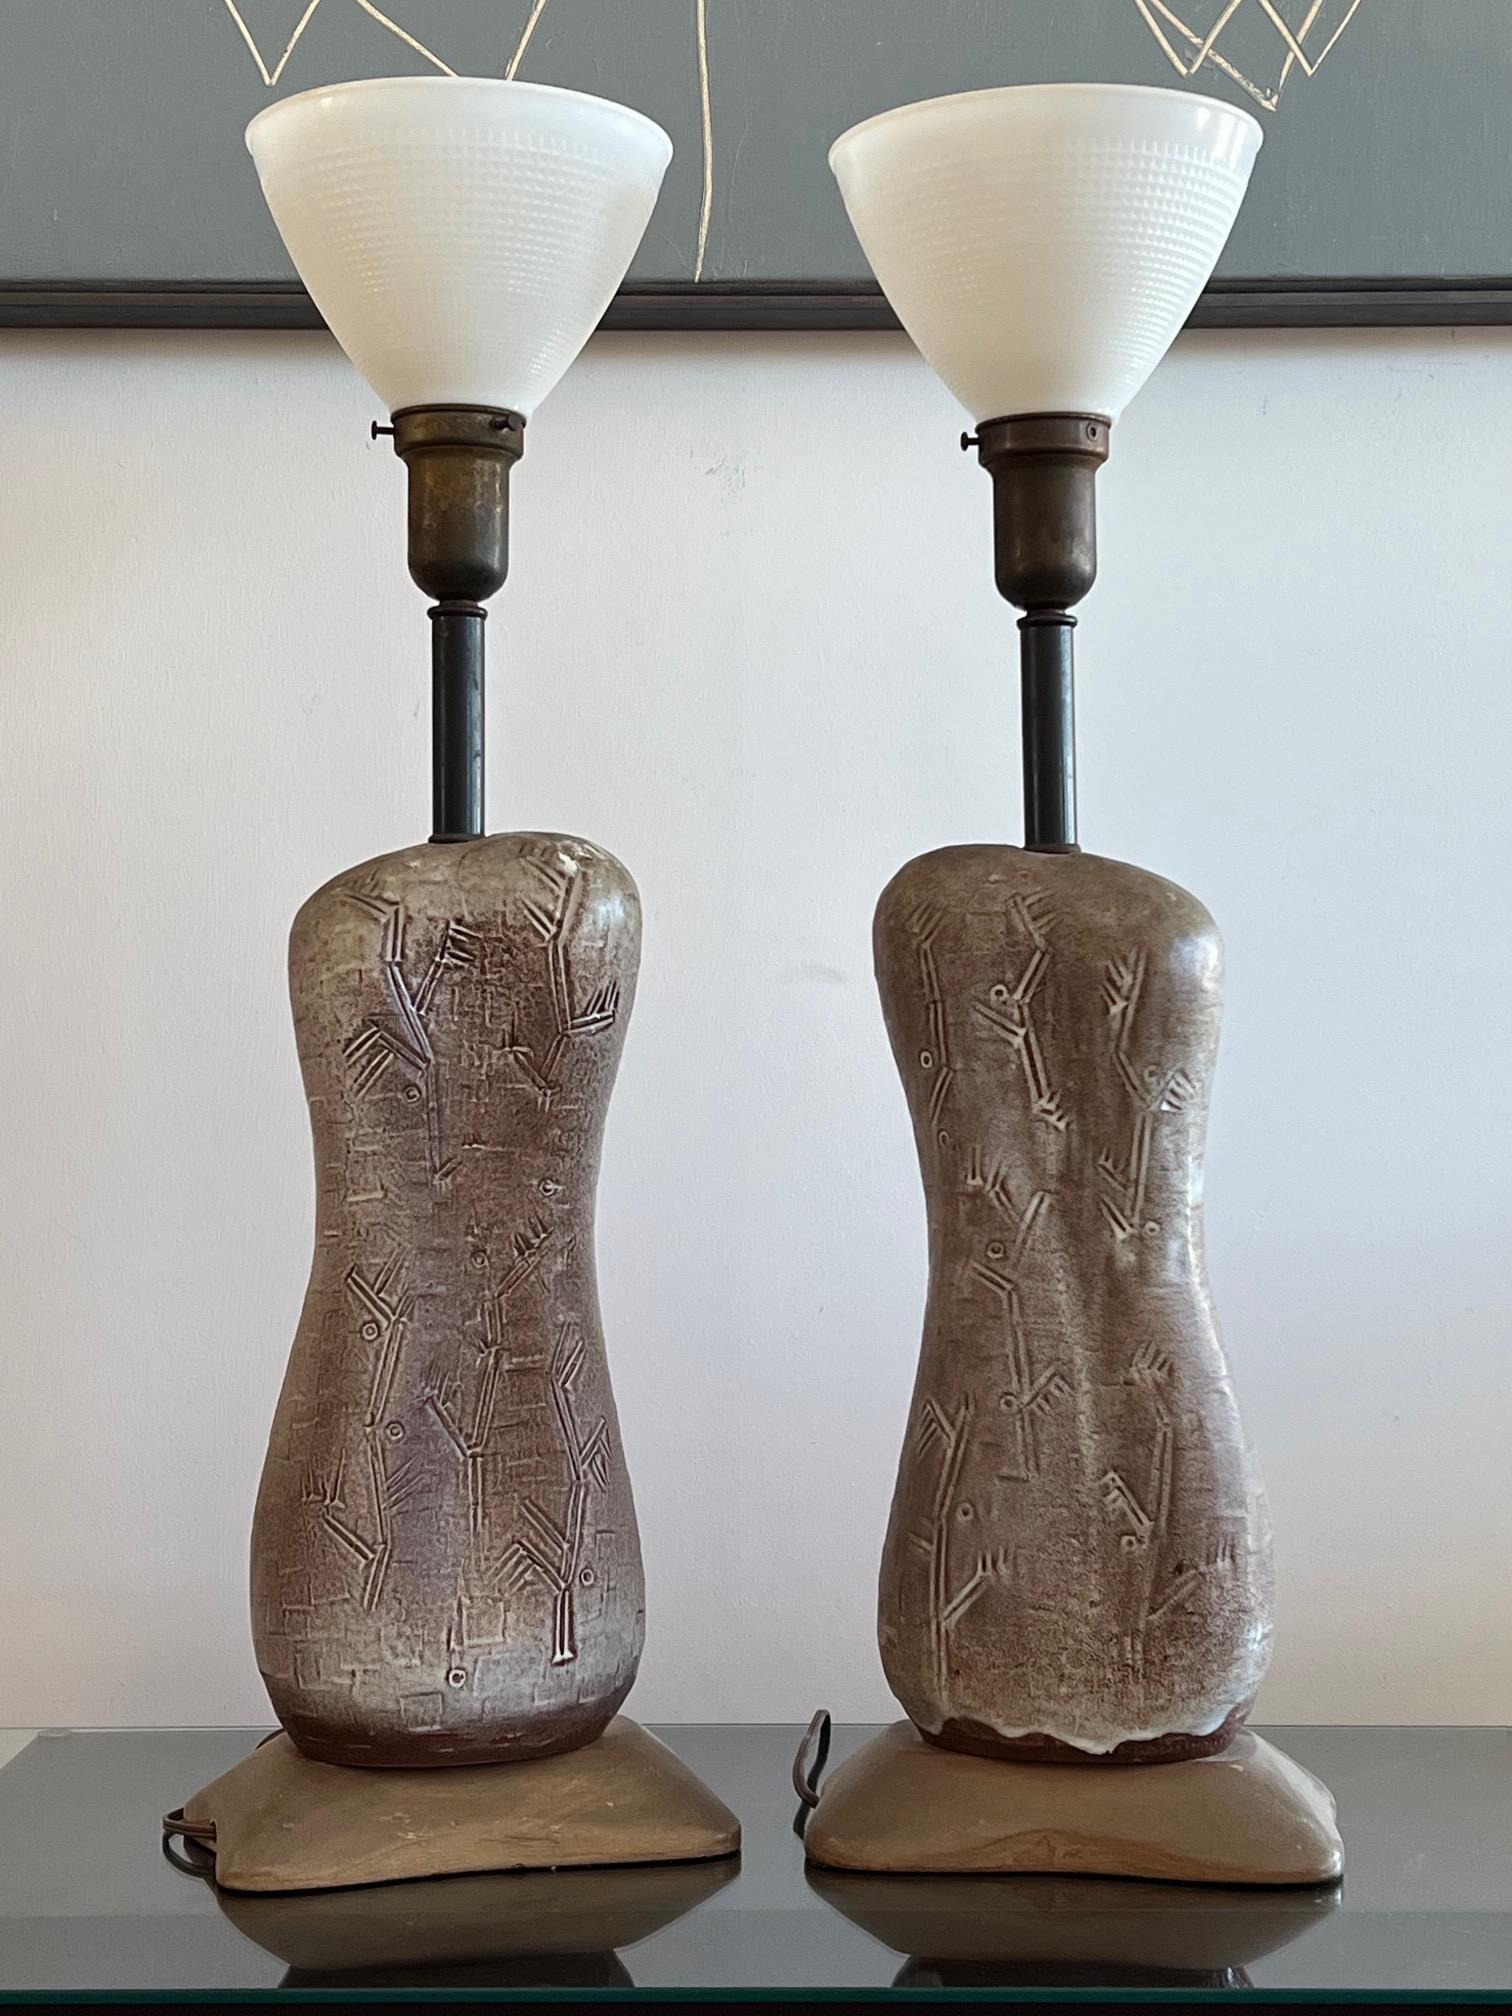 Une paire de lampes inhabituelles en céramique de Design Technics. Formes biomorphiques intéressantes avec décoration stylisée. Teintes originales, noter les teintes biomorphiques correspondantes.